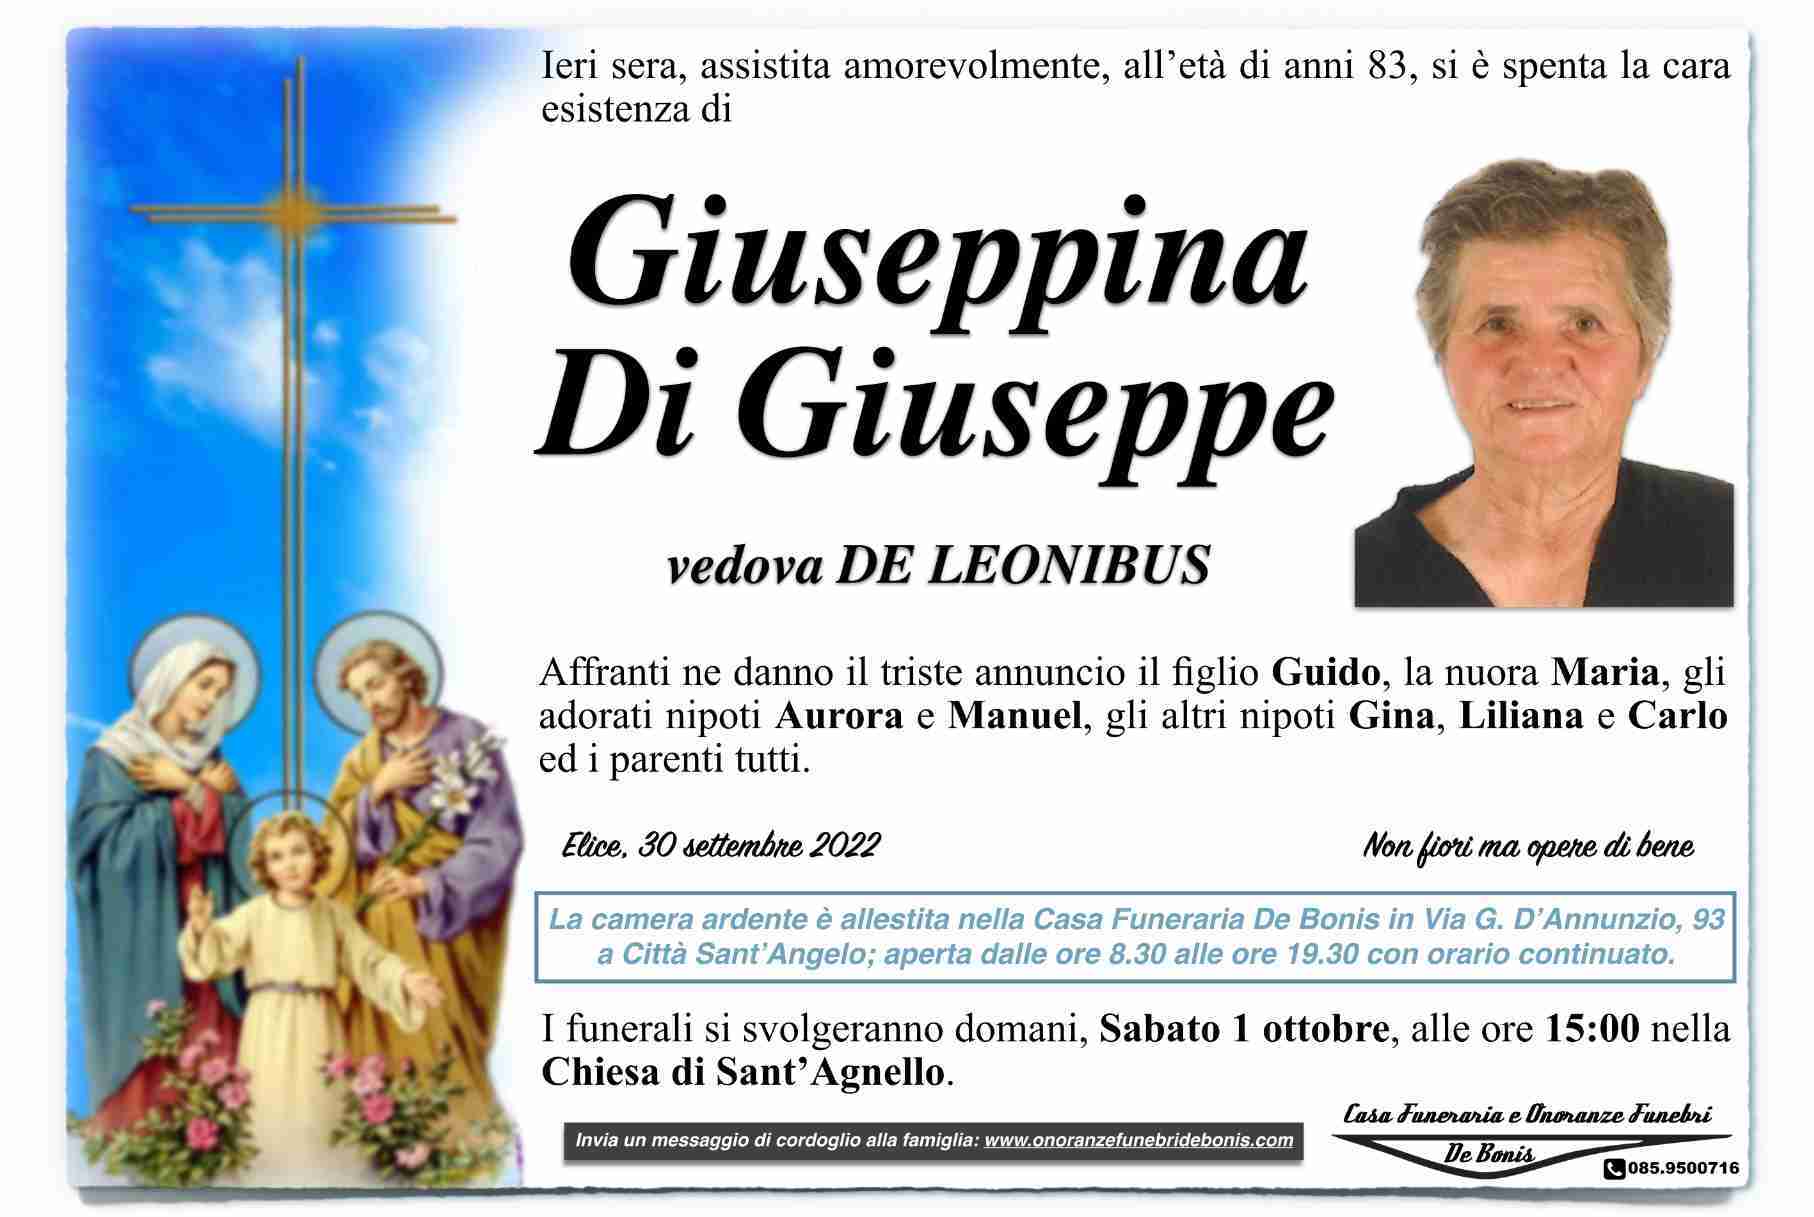 Giuseppina Di Giuseppe